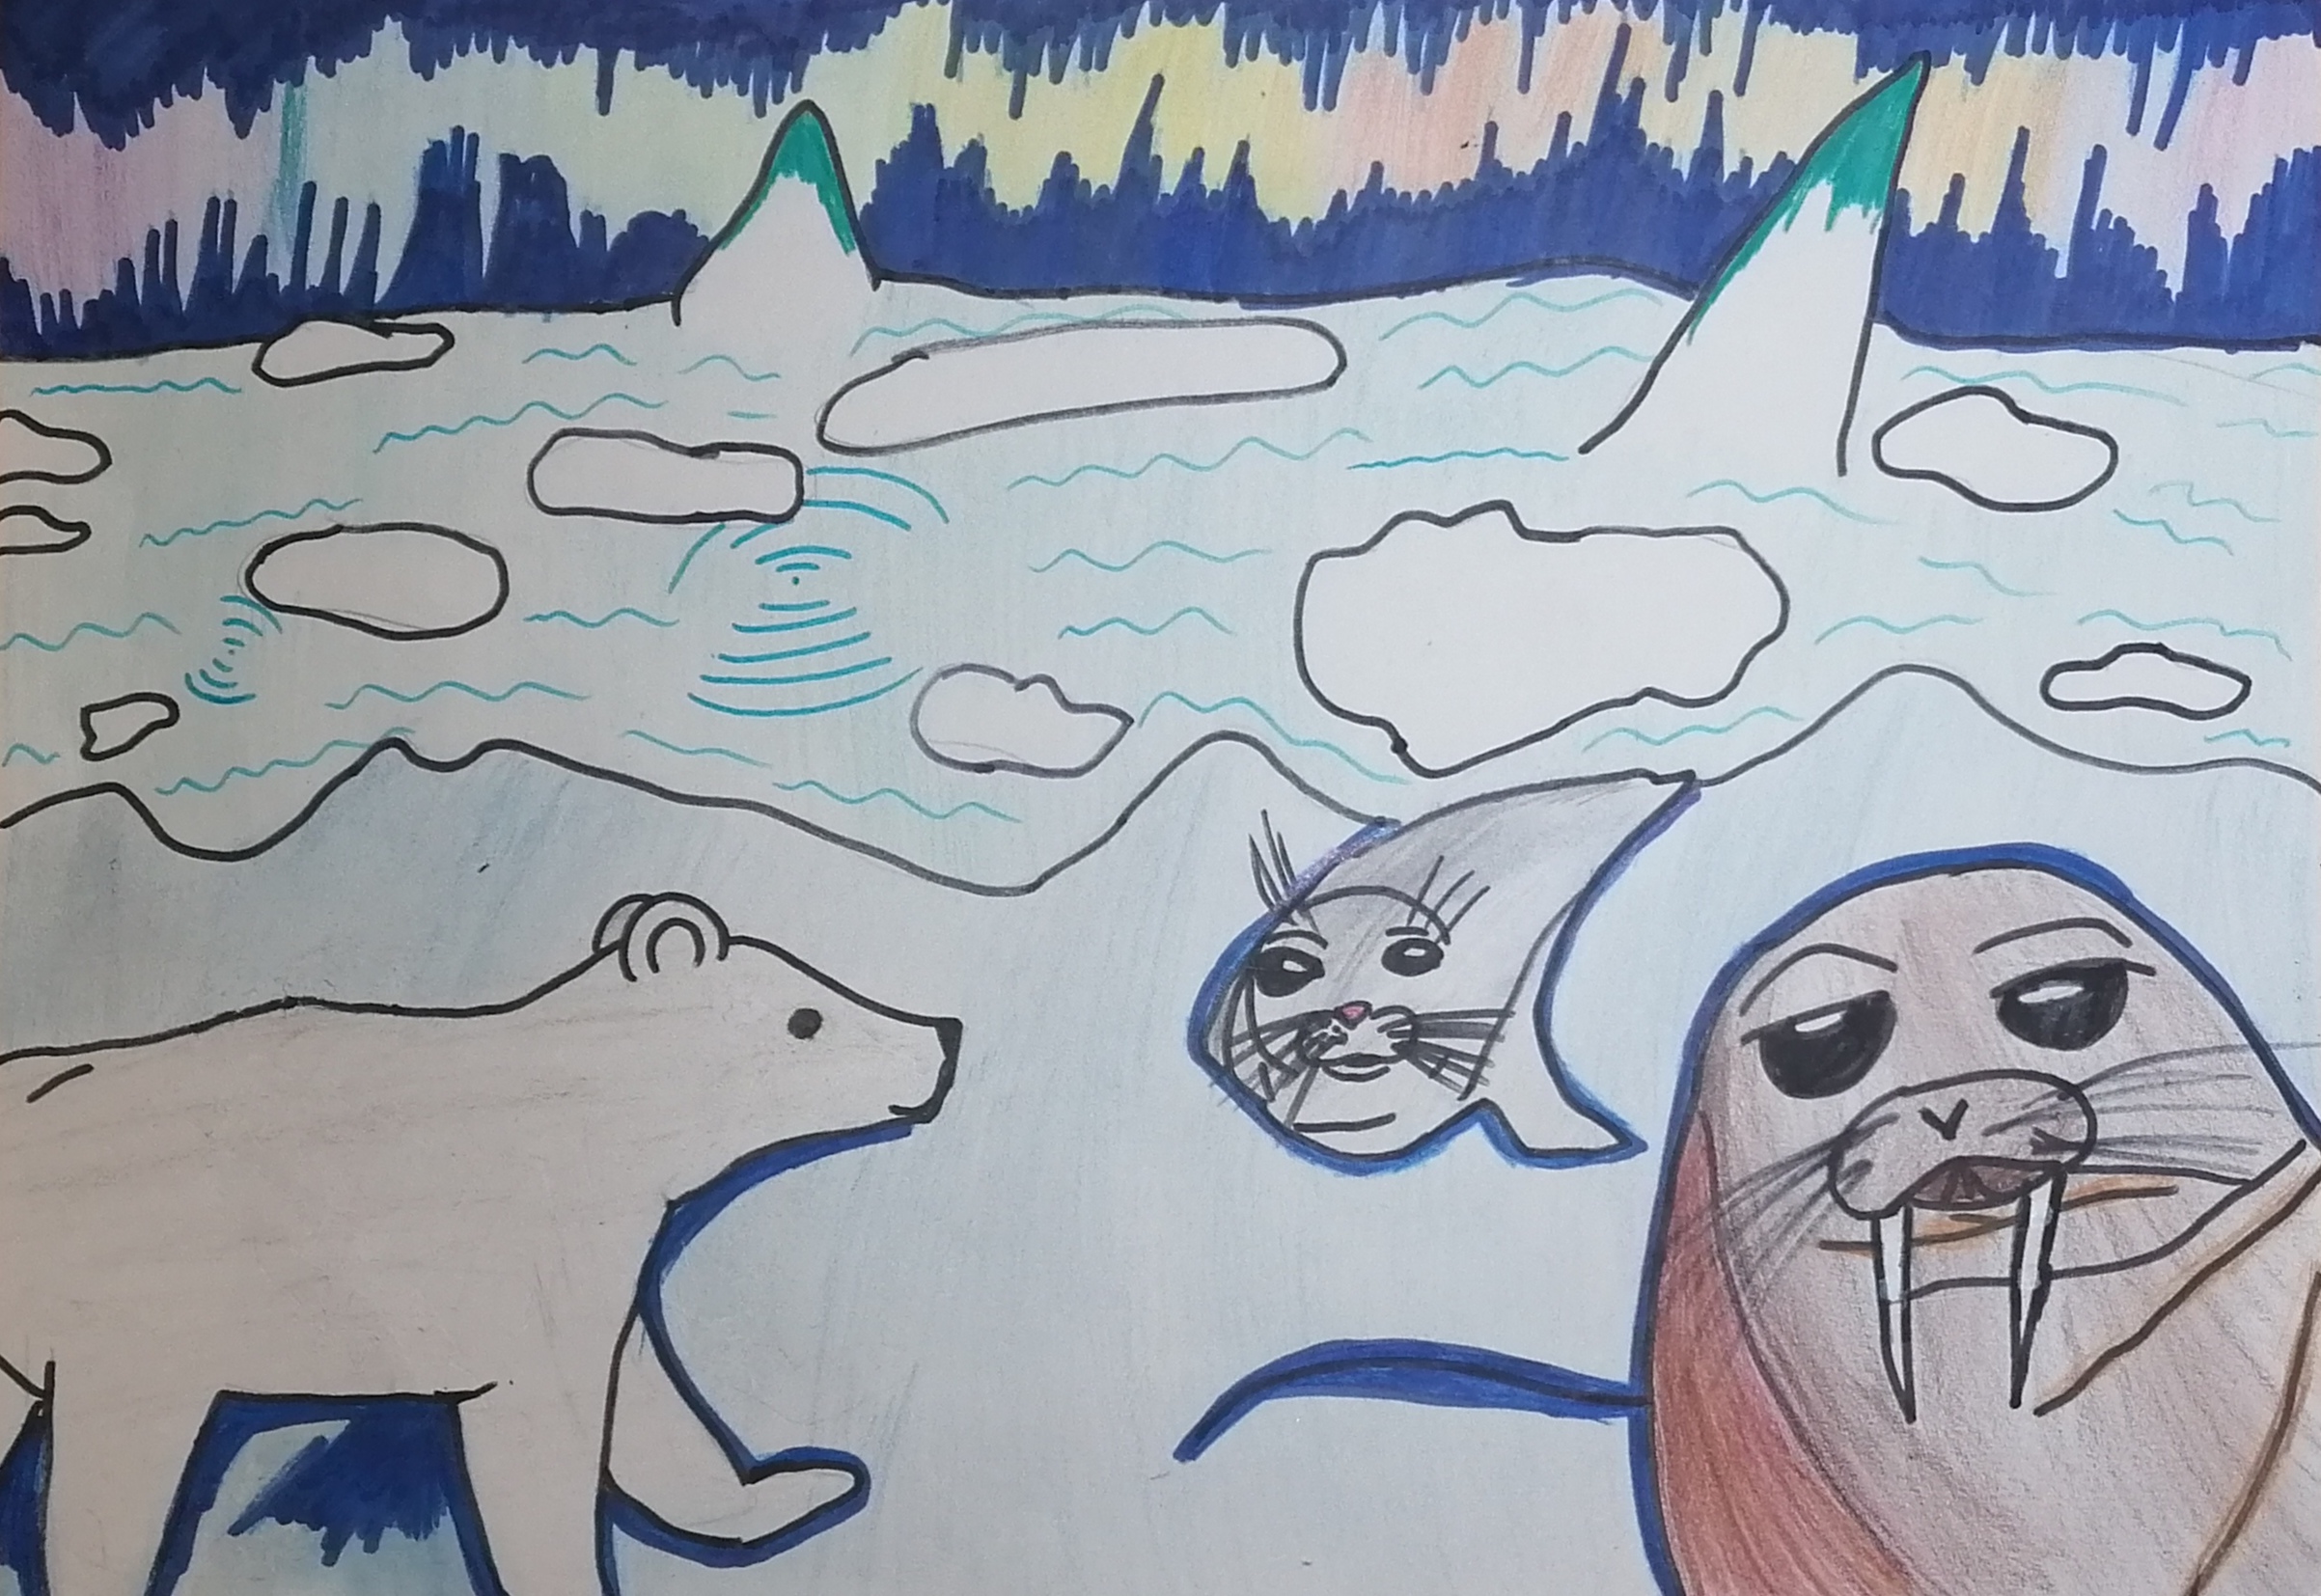 Рисуем Арктику с детьми